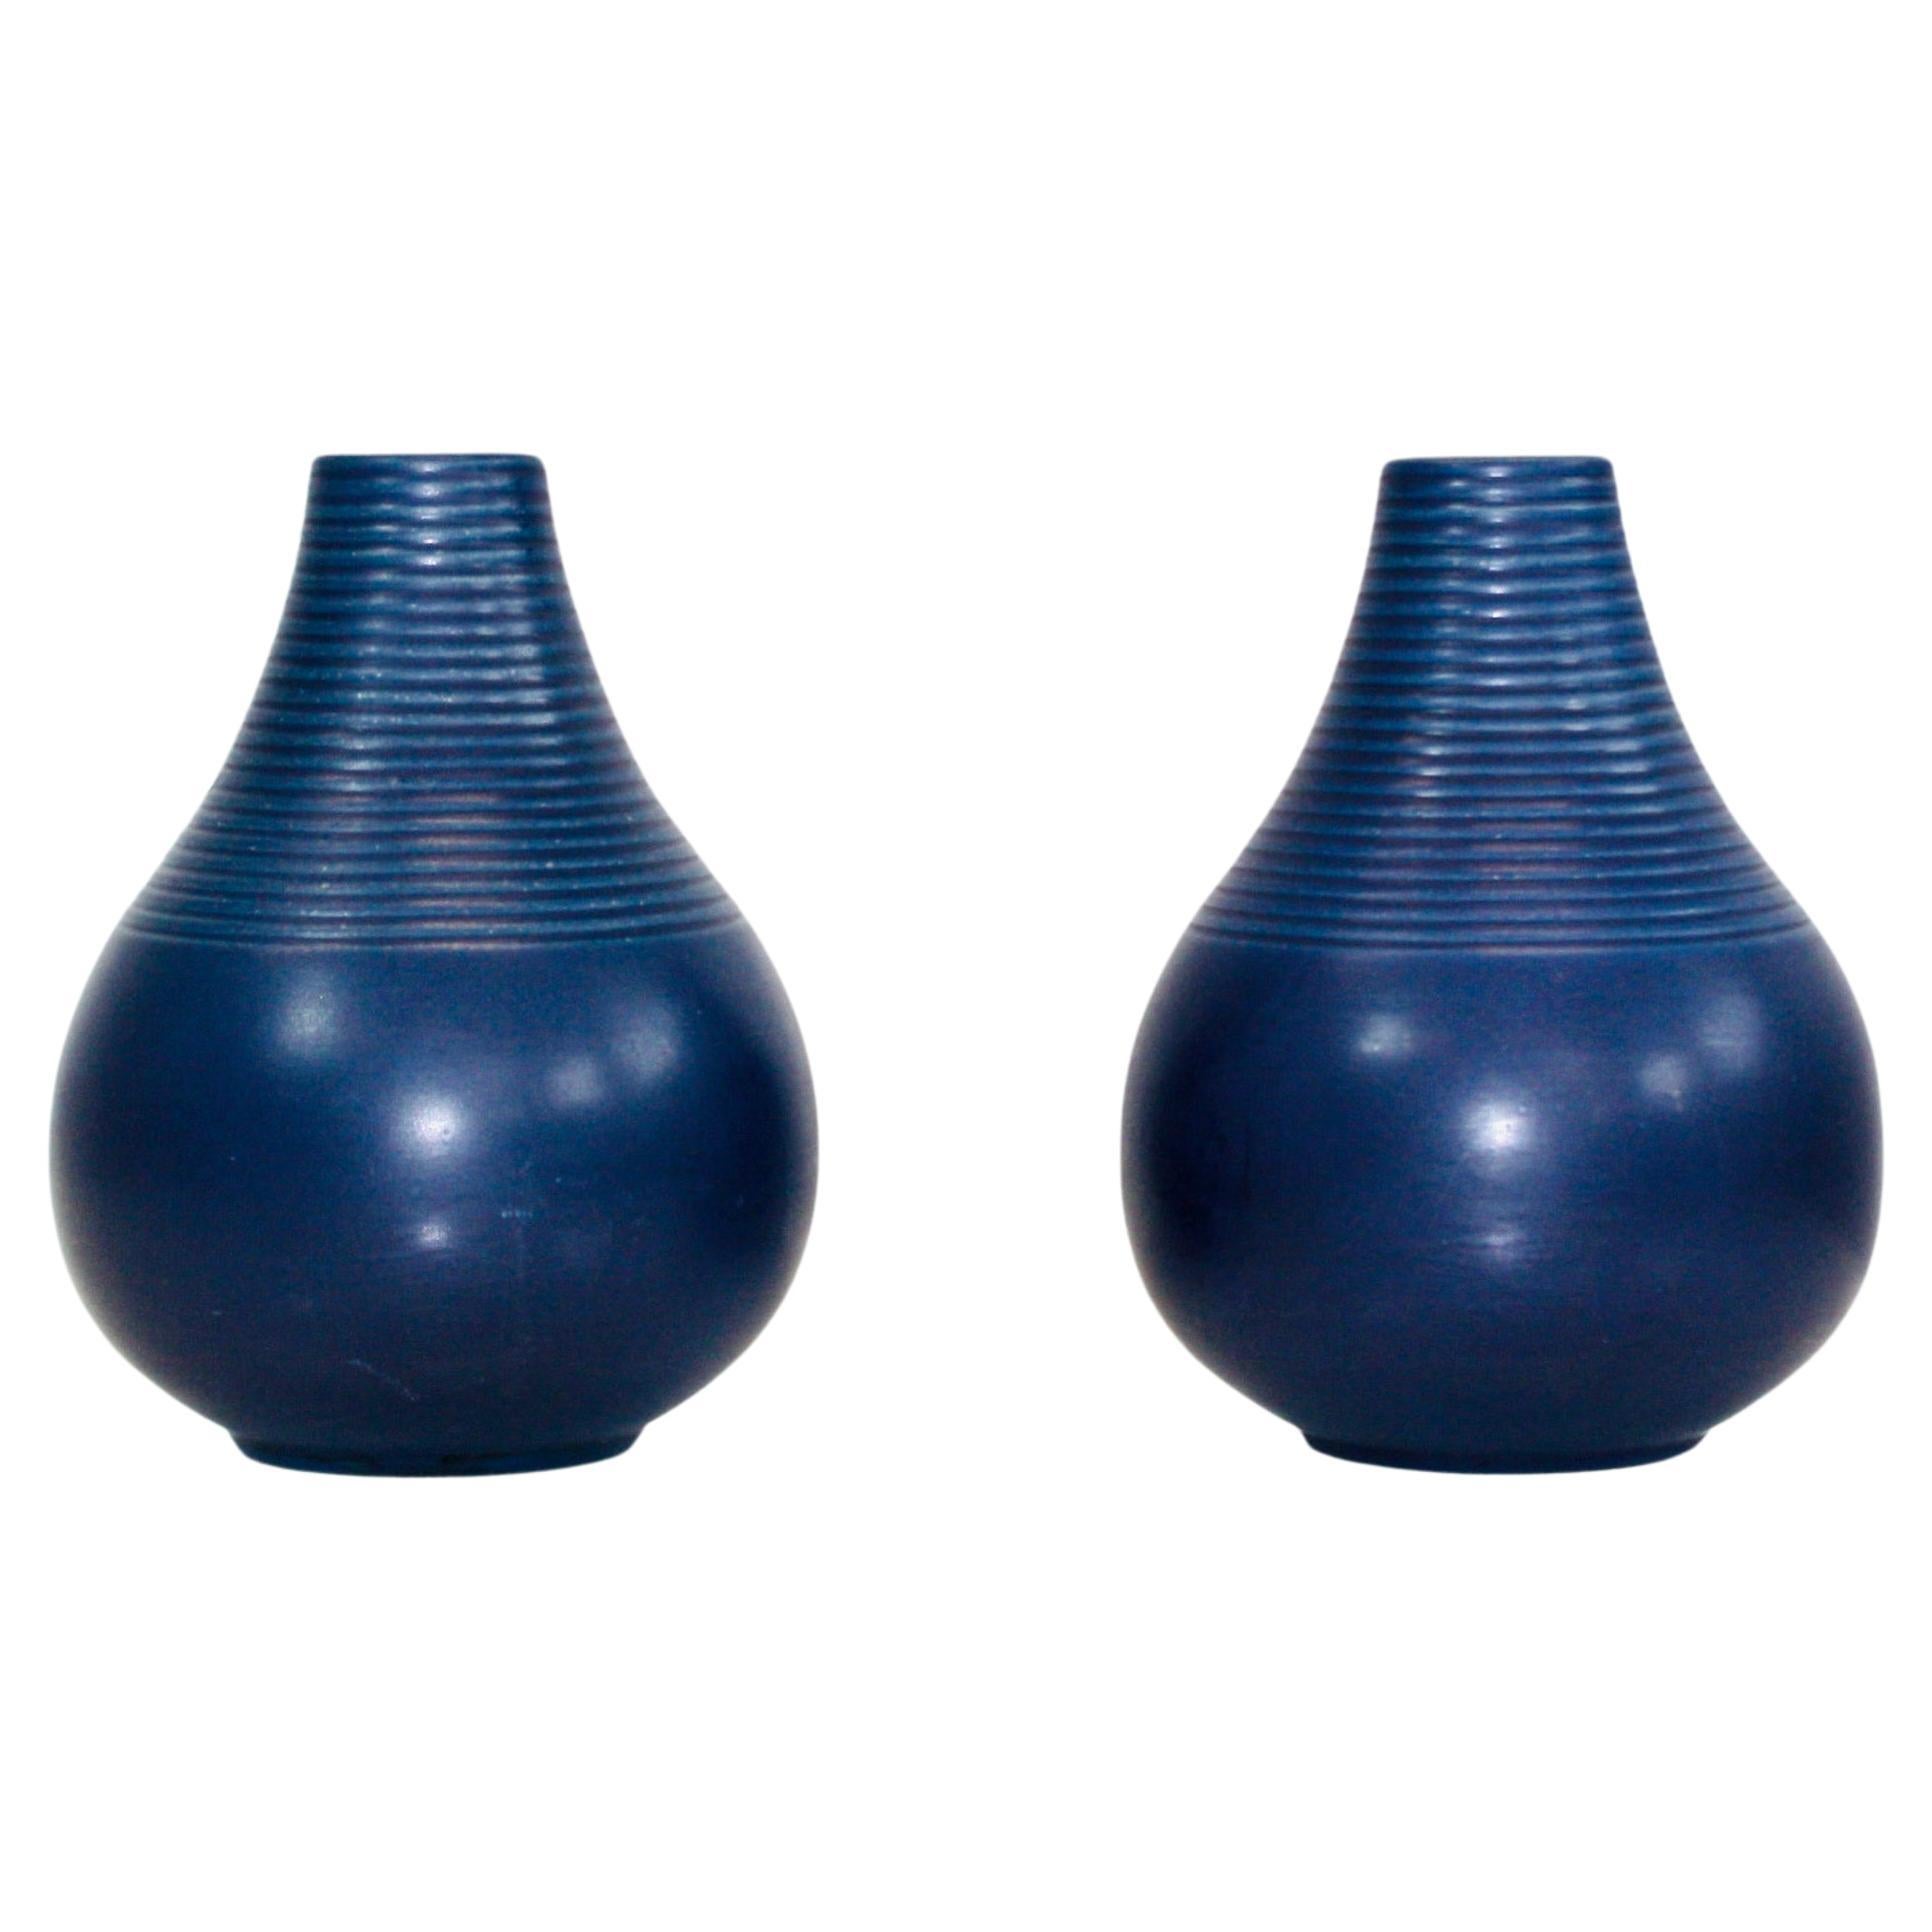 Set of blue stoneware vases by Axel Sorensen for P. Ipsens Enke, 1940s, Denmark